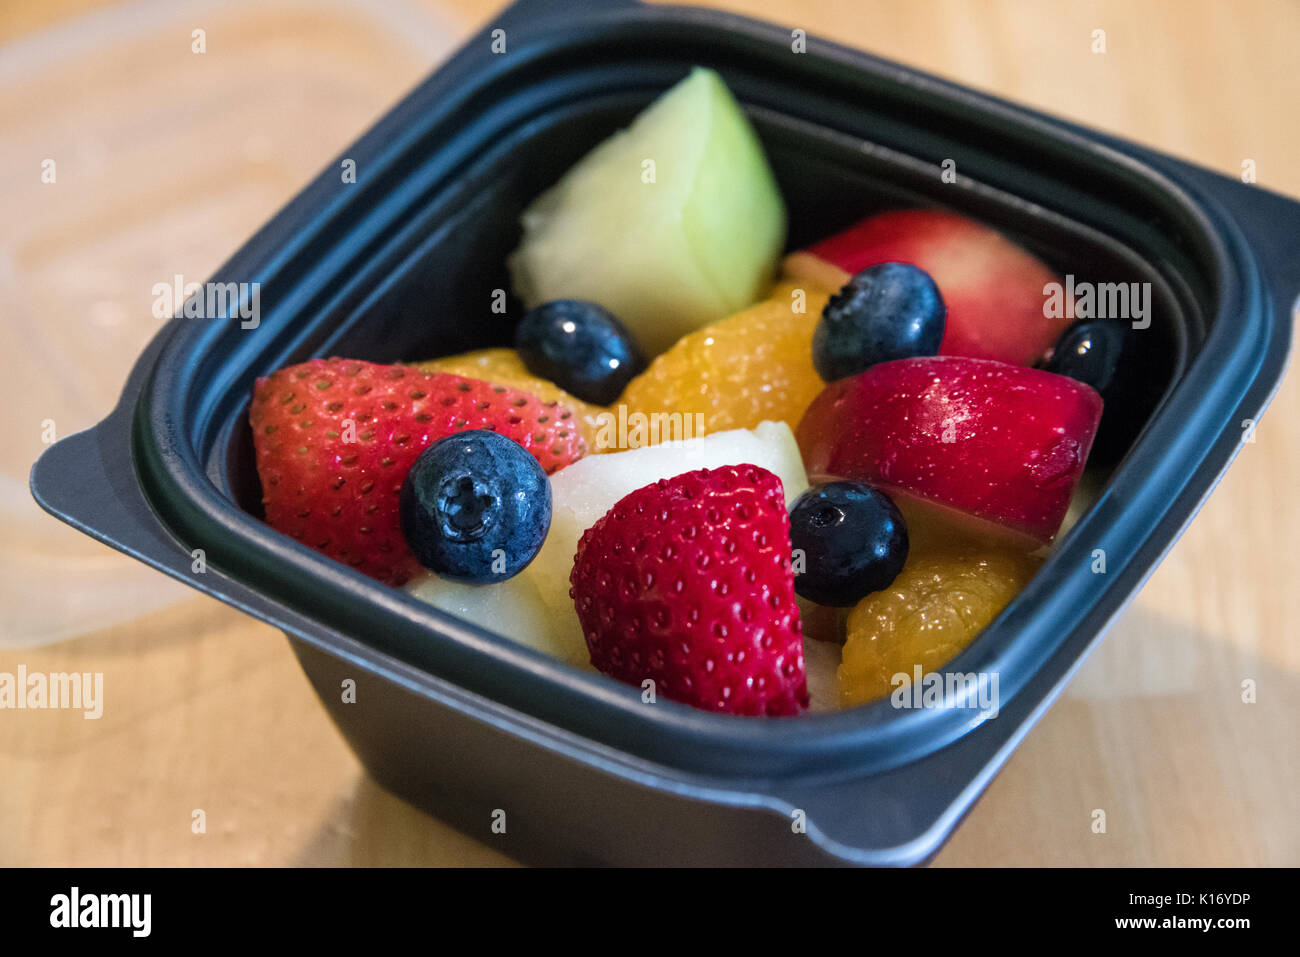 Una taza de fruta fresca elemento lateral ofrece una opción saludable y deliciosa en el Chick-fil-A restaurantes, top-rated cadena de restaurantes de servicio rápido en los Estados Unidos. Foto de stock